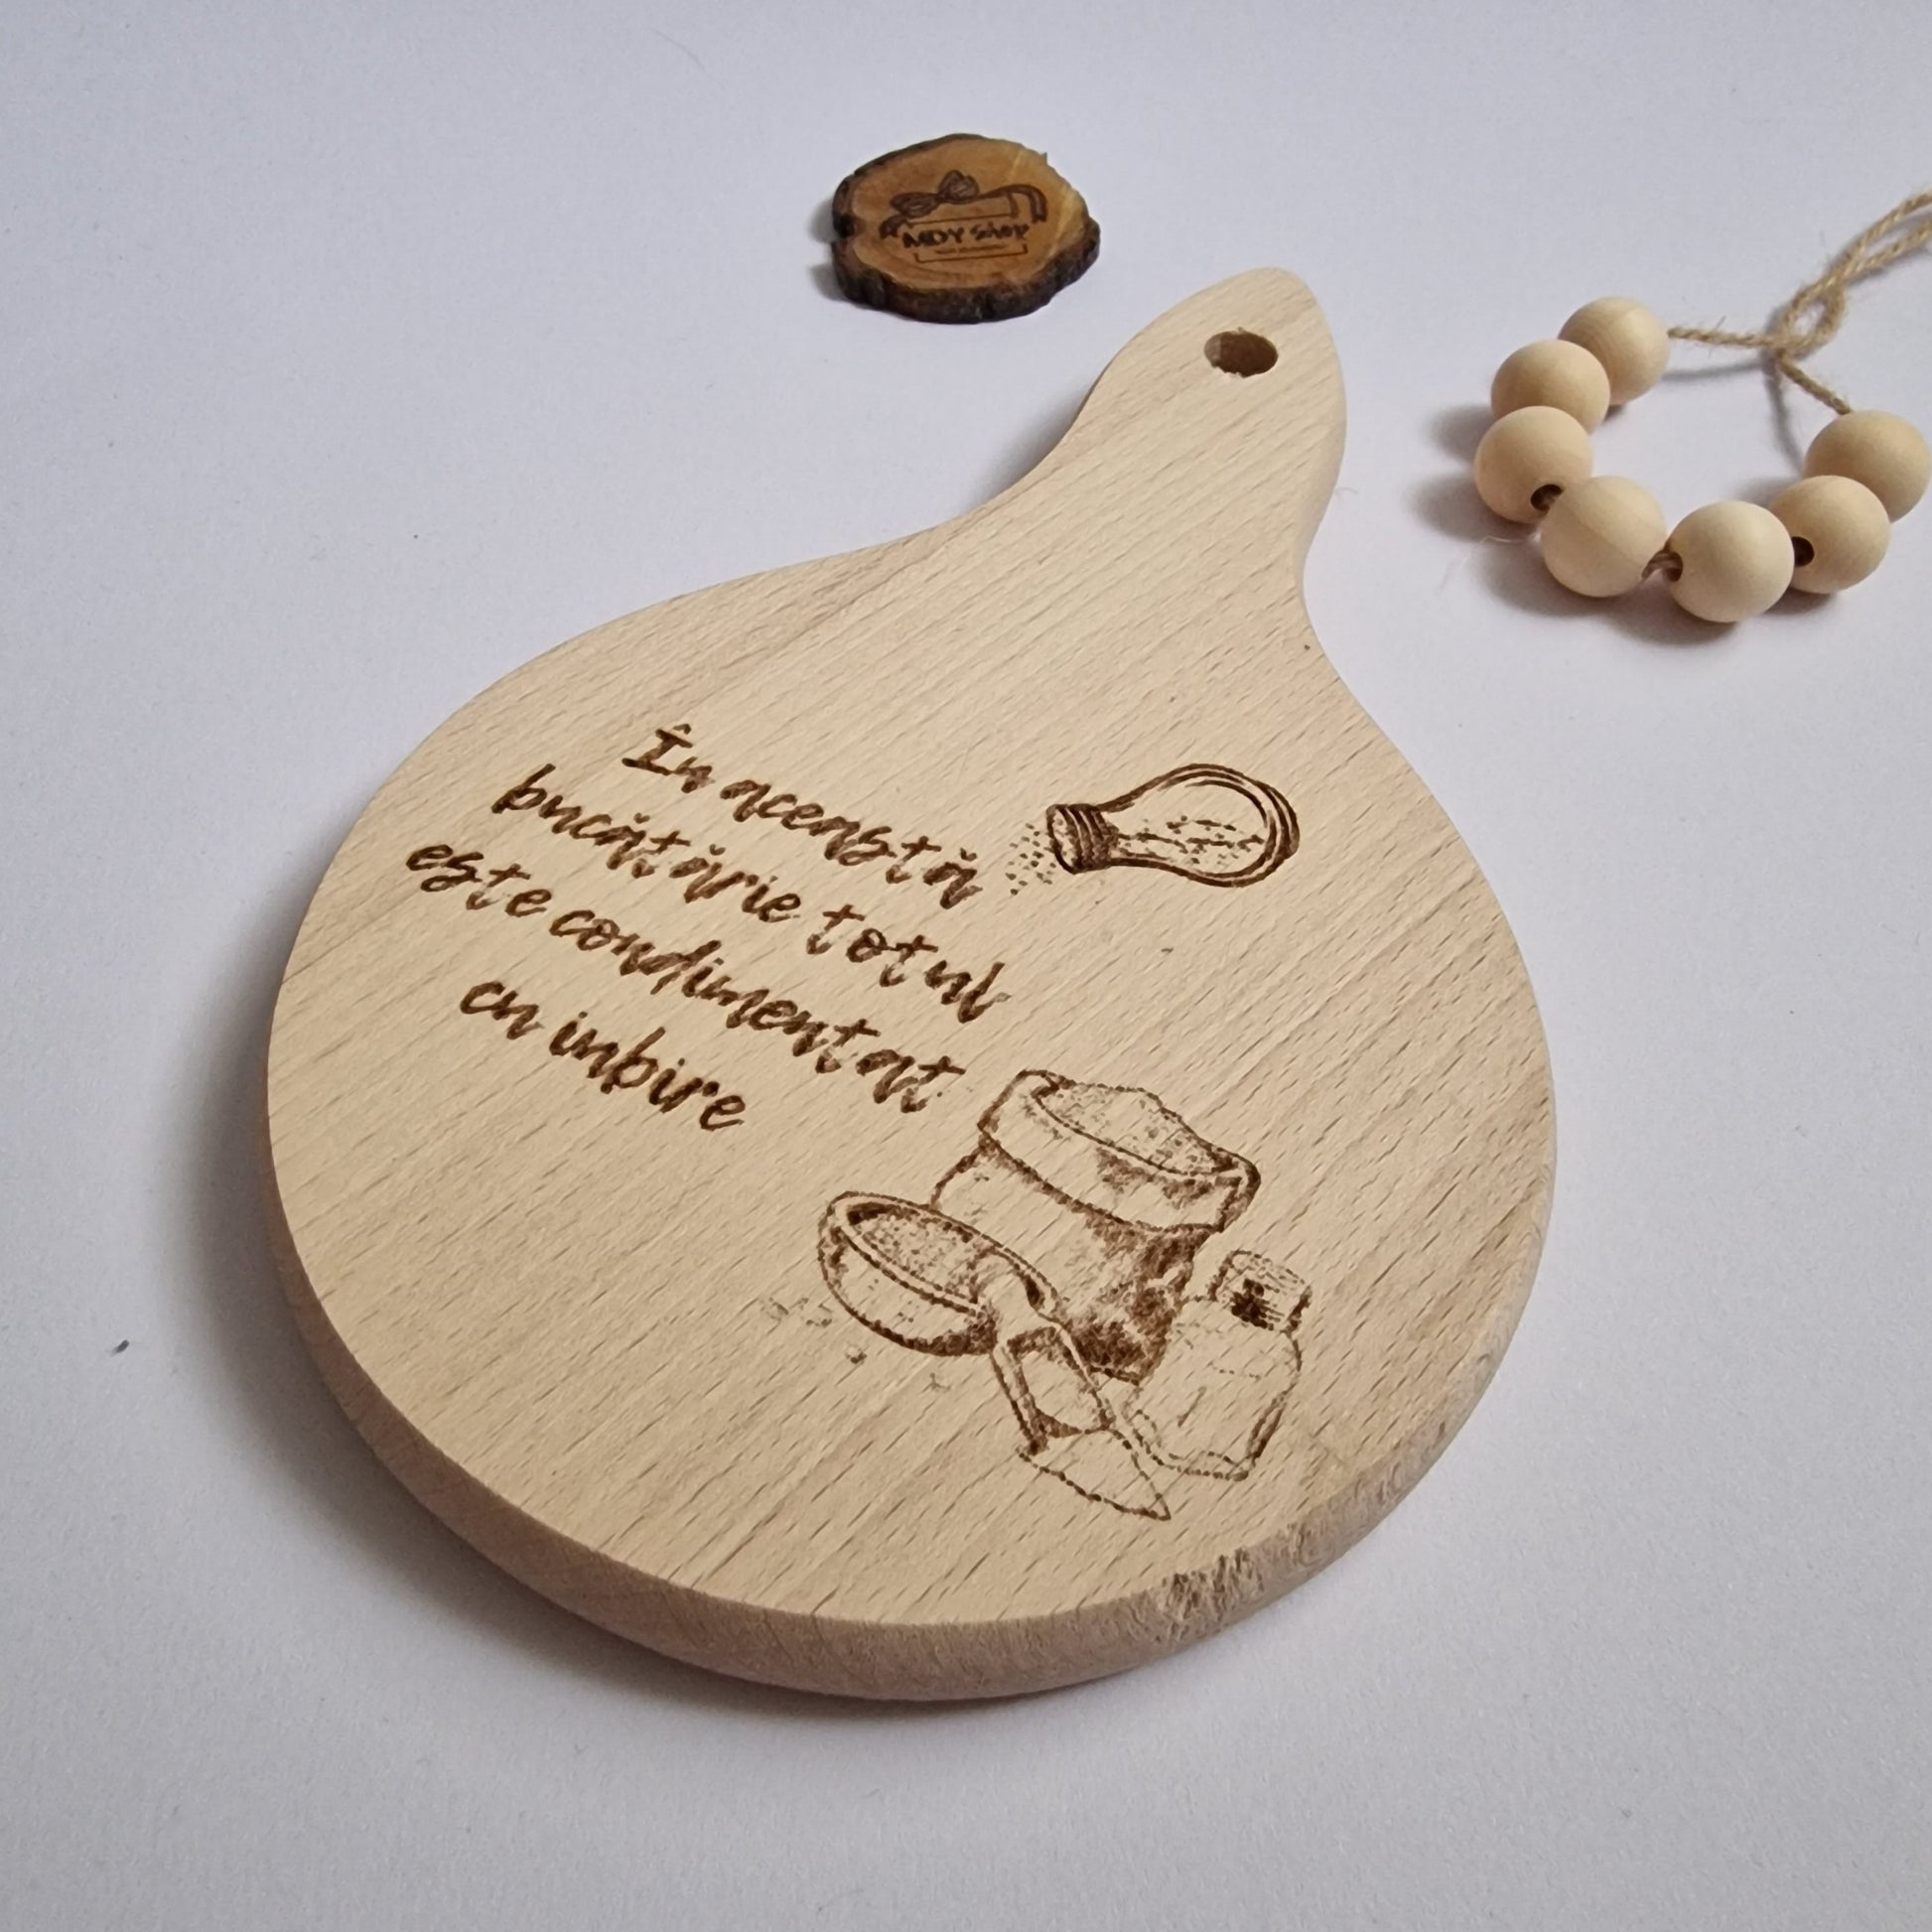 Tocător din lemn gravat cu mesaj - ”În această bucătărie totul este condimentat cu iubire”